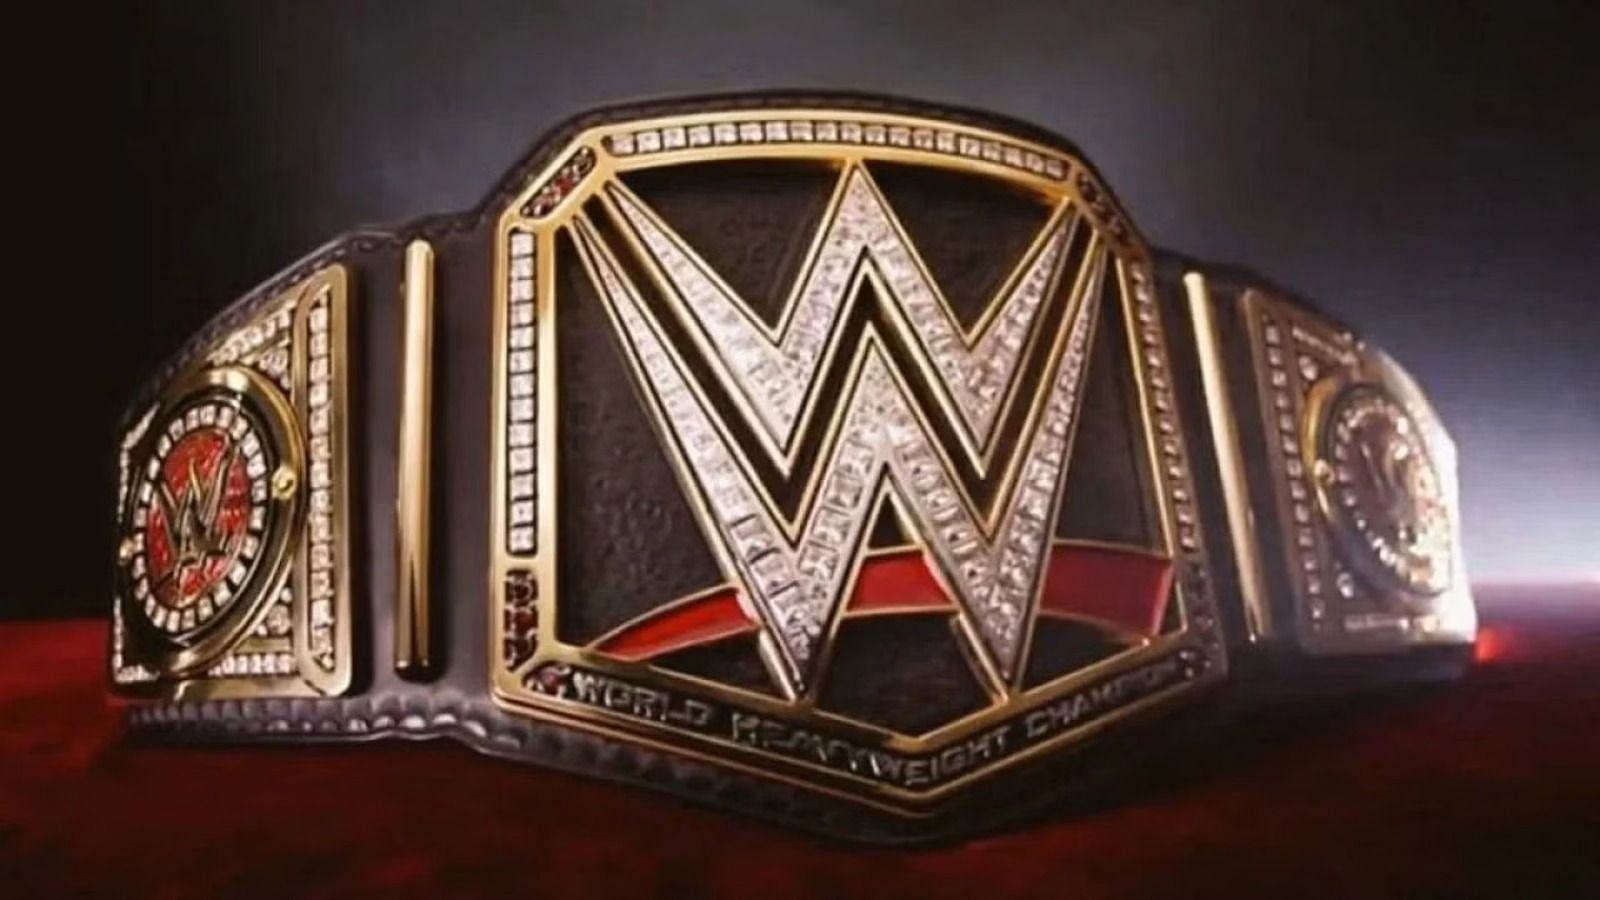 WWE हॉल ऑफ़ फेमर केविन नैश ने अपनी इंजरी को लेकर बड़ा अपडेट दिया है